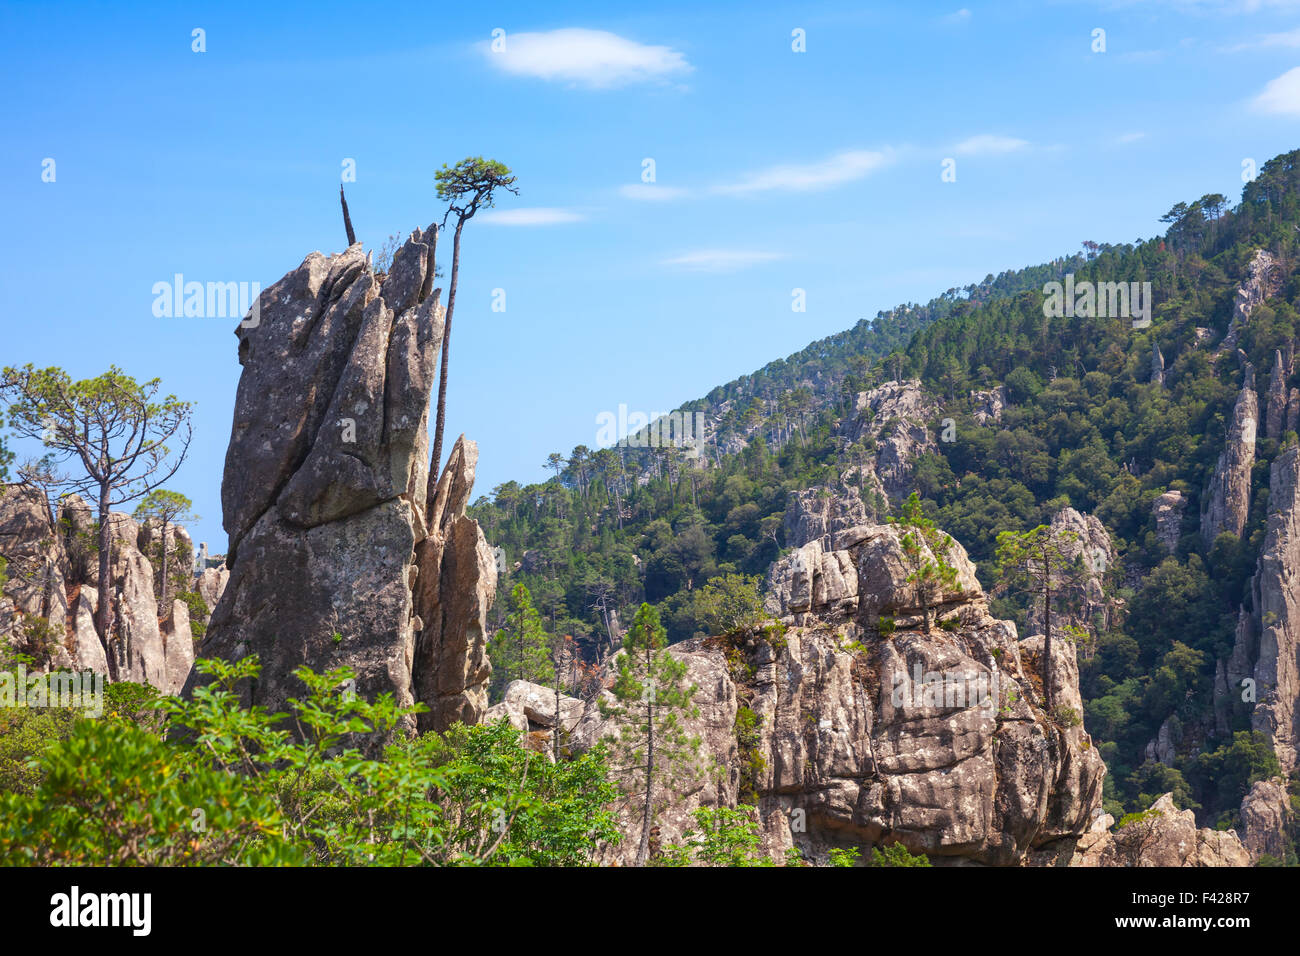 Montagne sauvage de pins qui poussent sur les roches. La partie sud de la Corse, France Banque D'Images